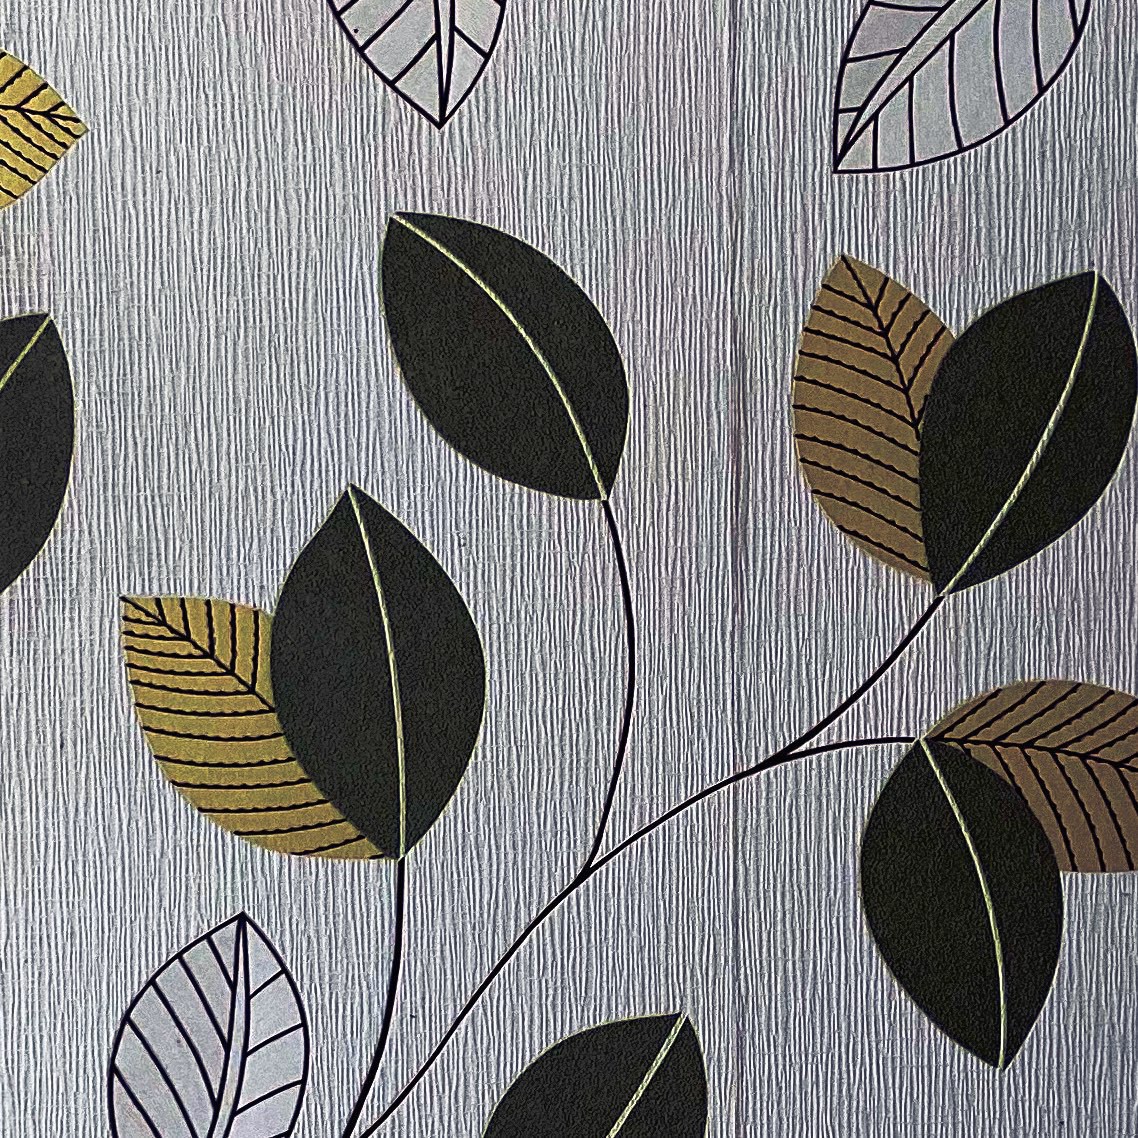 Thirteen leaves printed on wallpaper